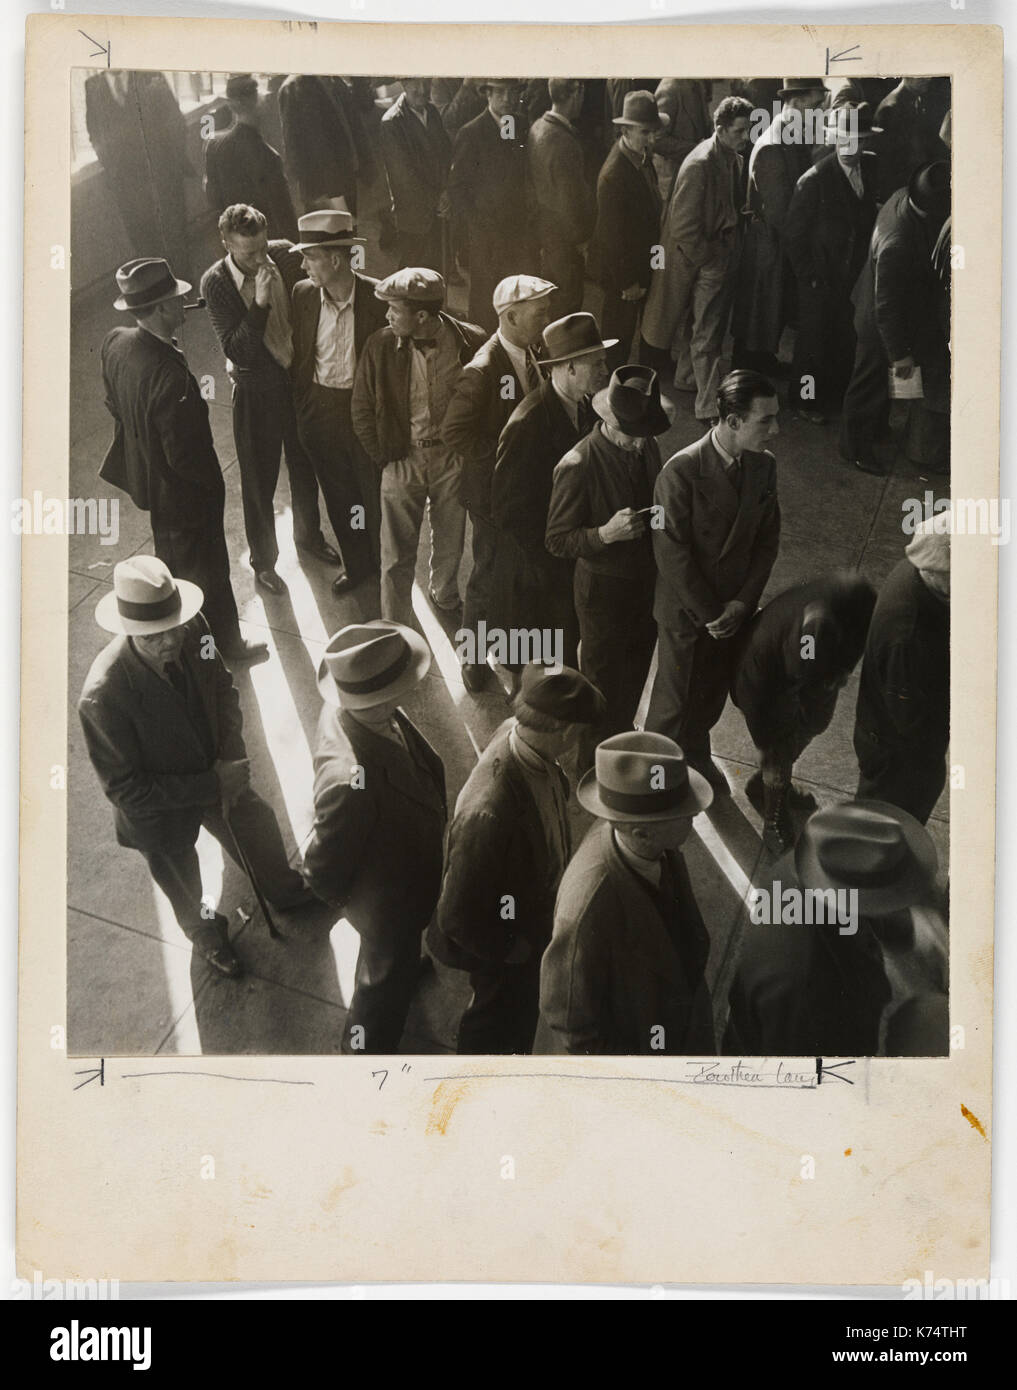 Arbeitslose Männer Line-up für das erste Mal in Kalifornien für Ansprüche auf Arbeitslosengeld, CA, 1936 Datei. Foto von Dorothea Lange Stockfoto